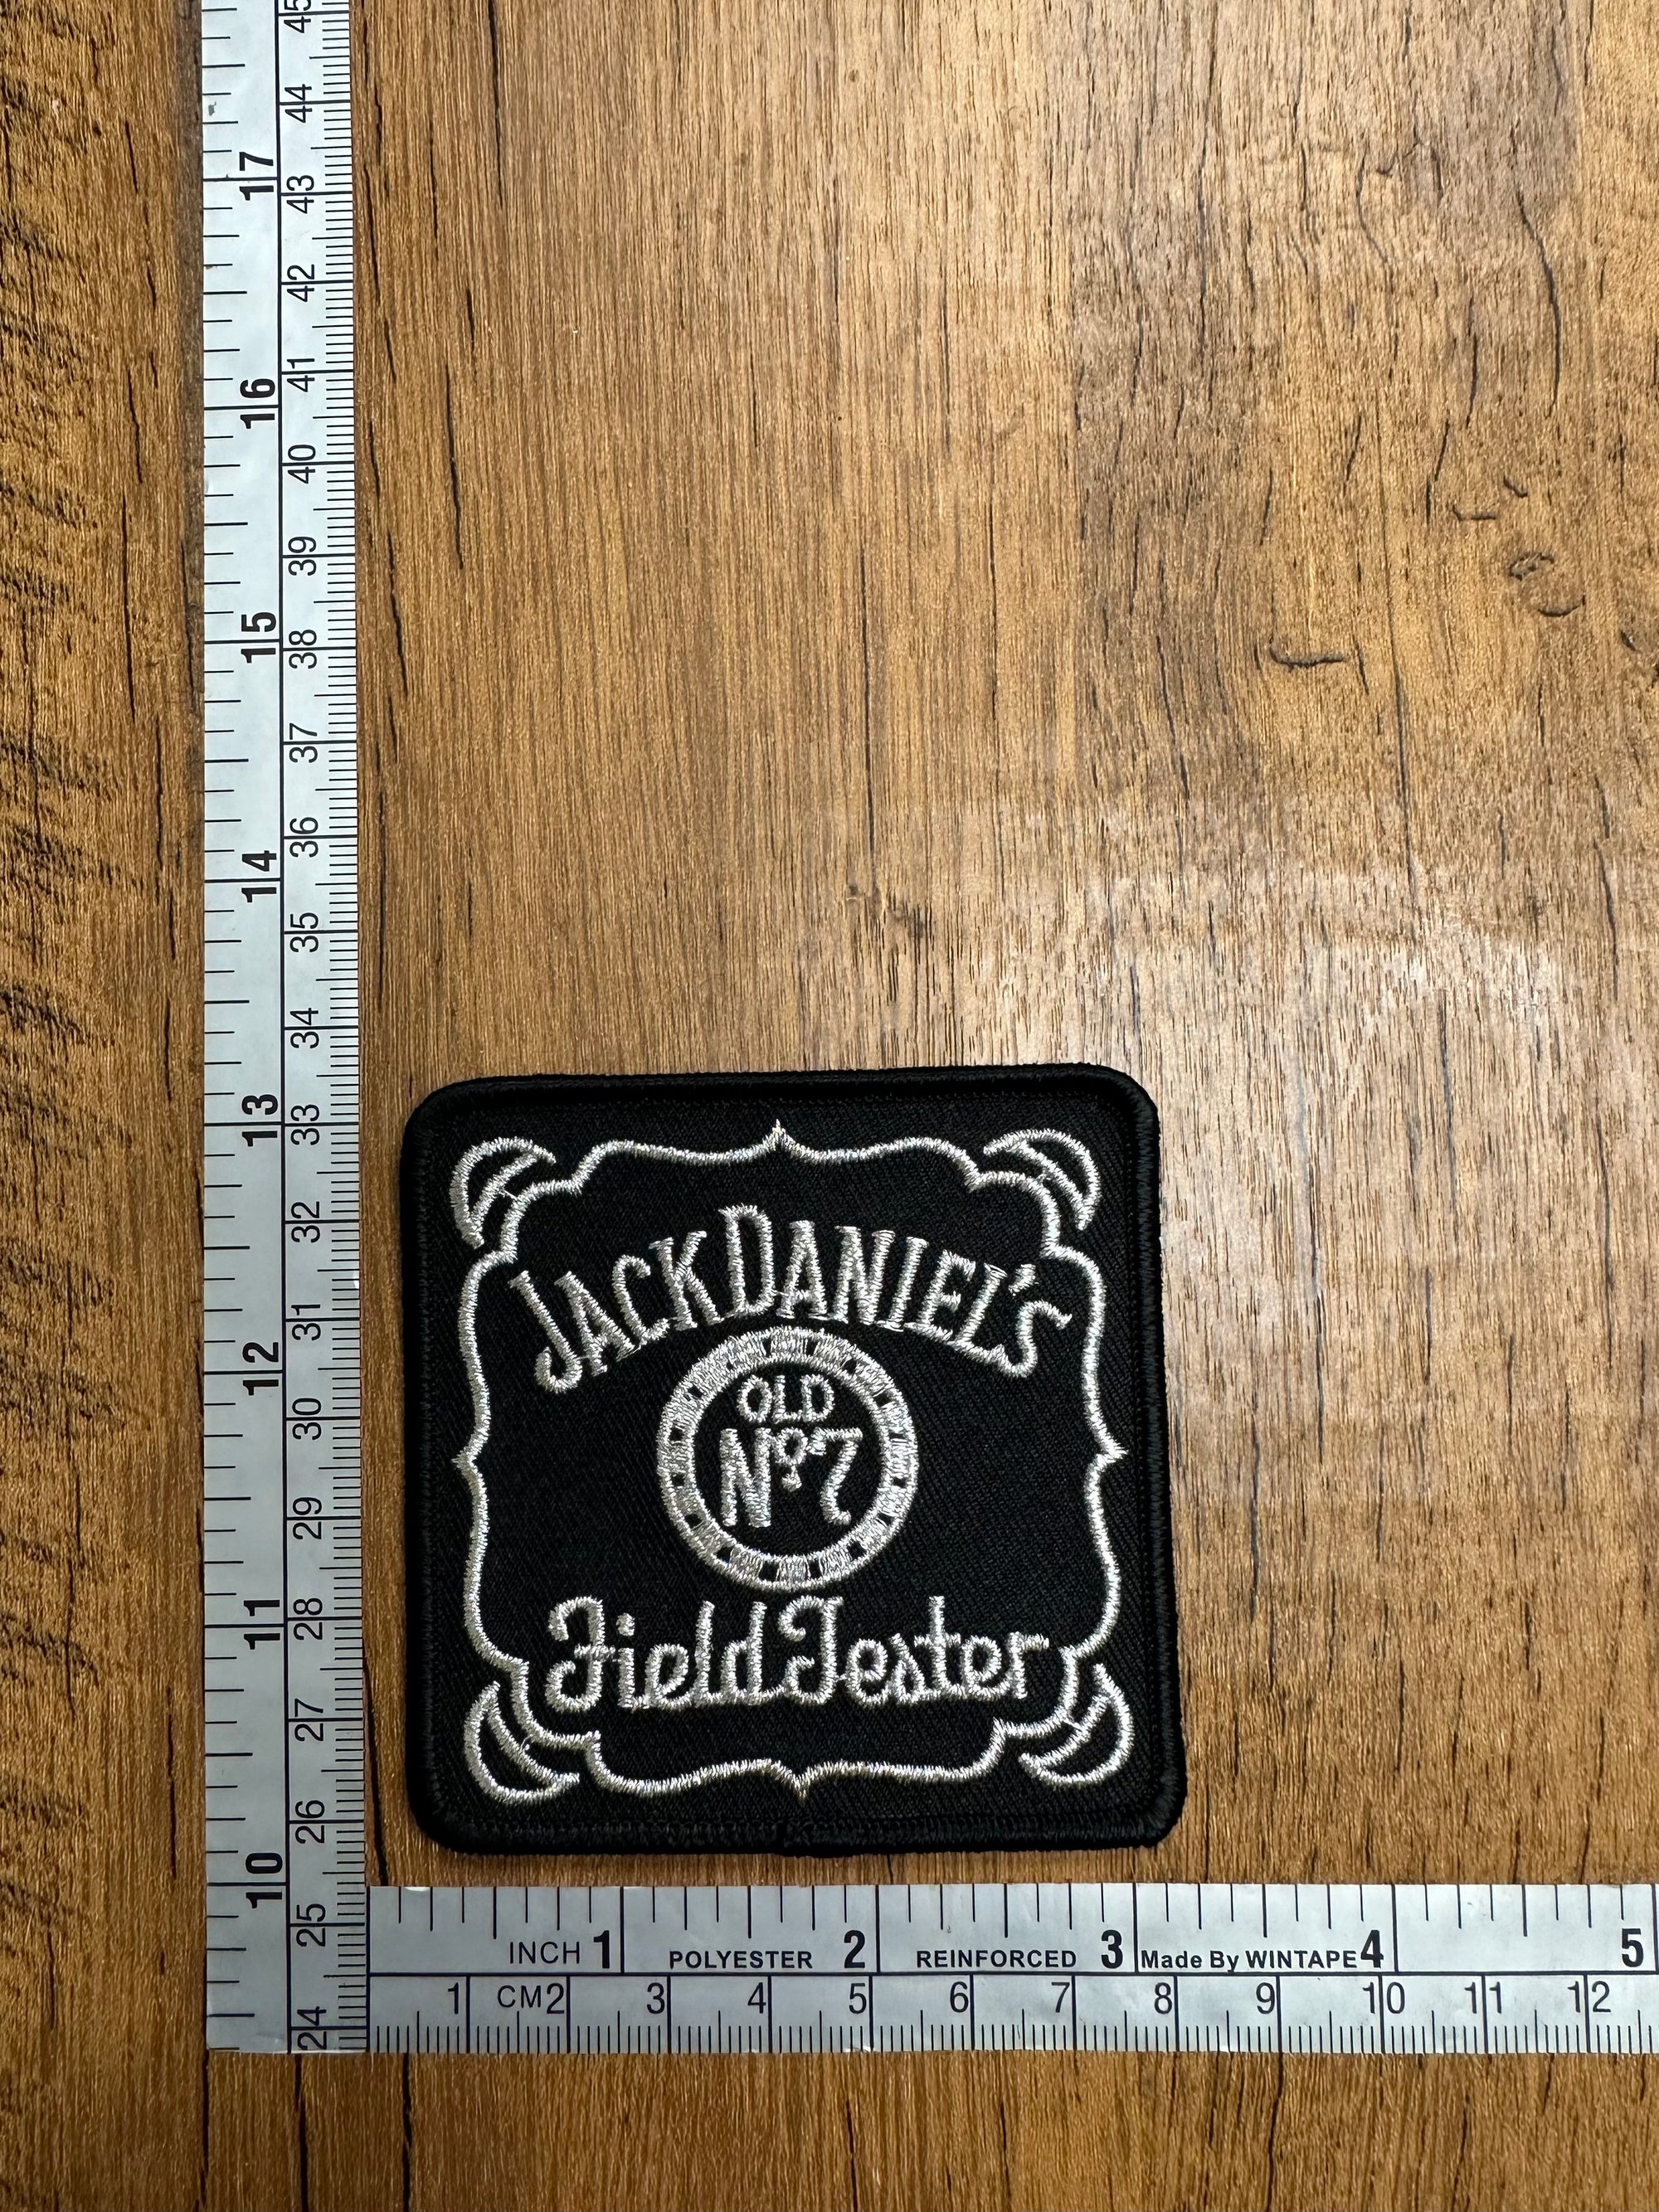 Vintage Jack Daniel’s Old No.7 Field Tester